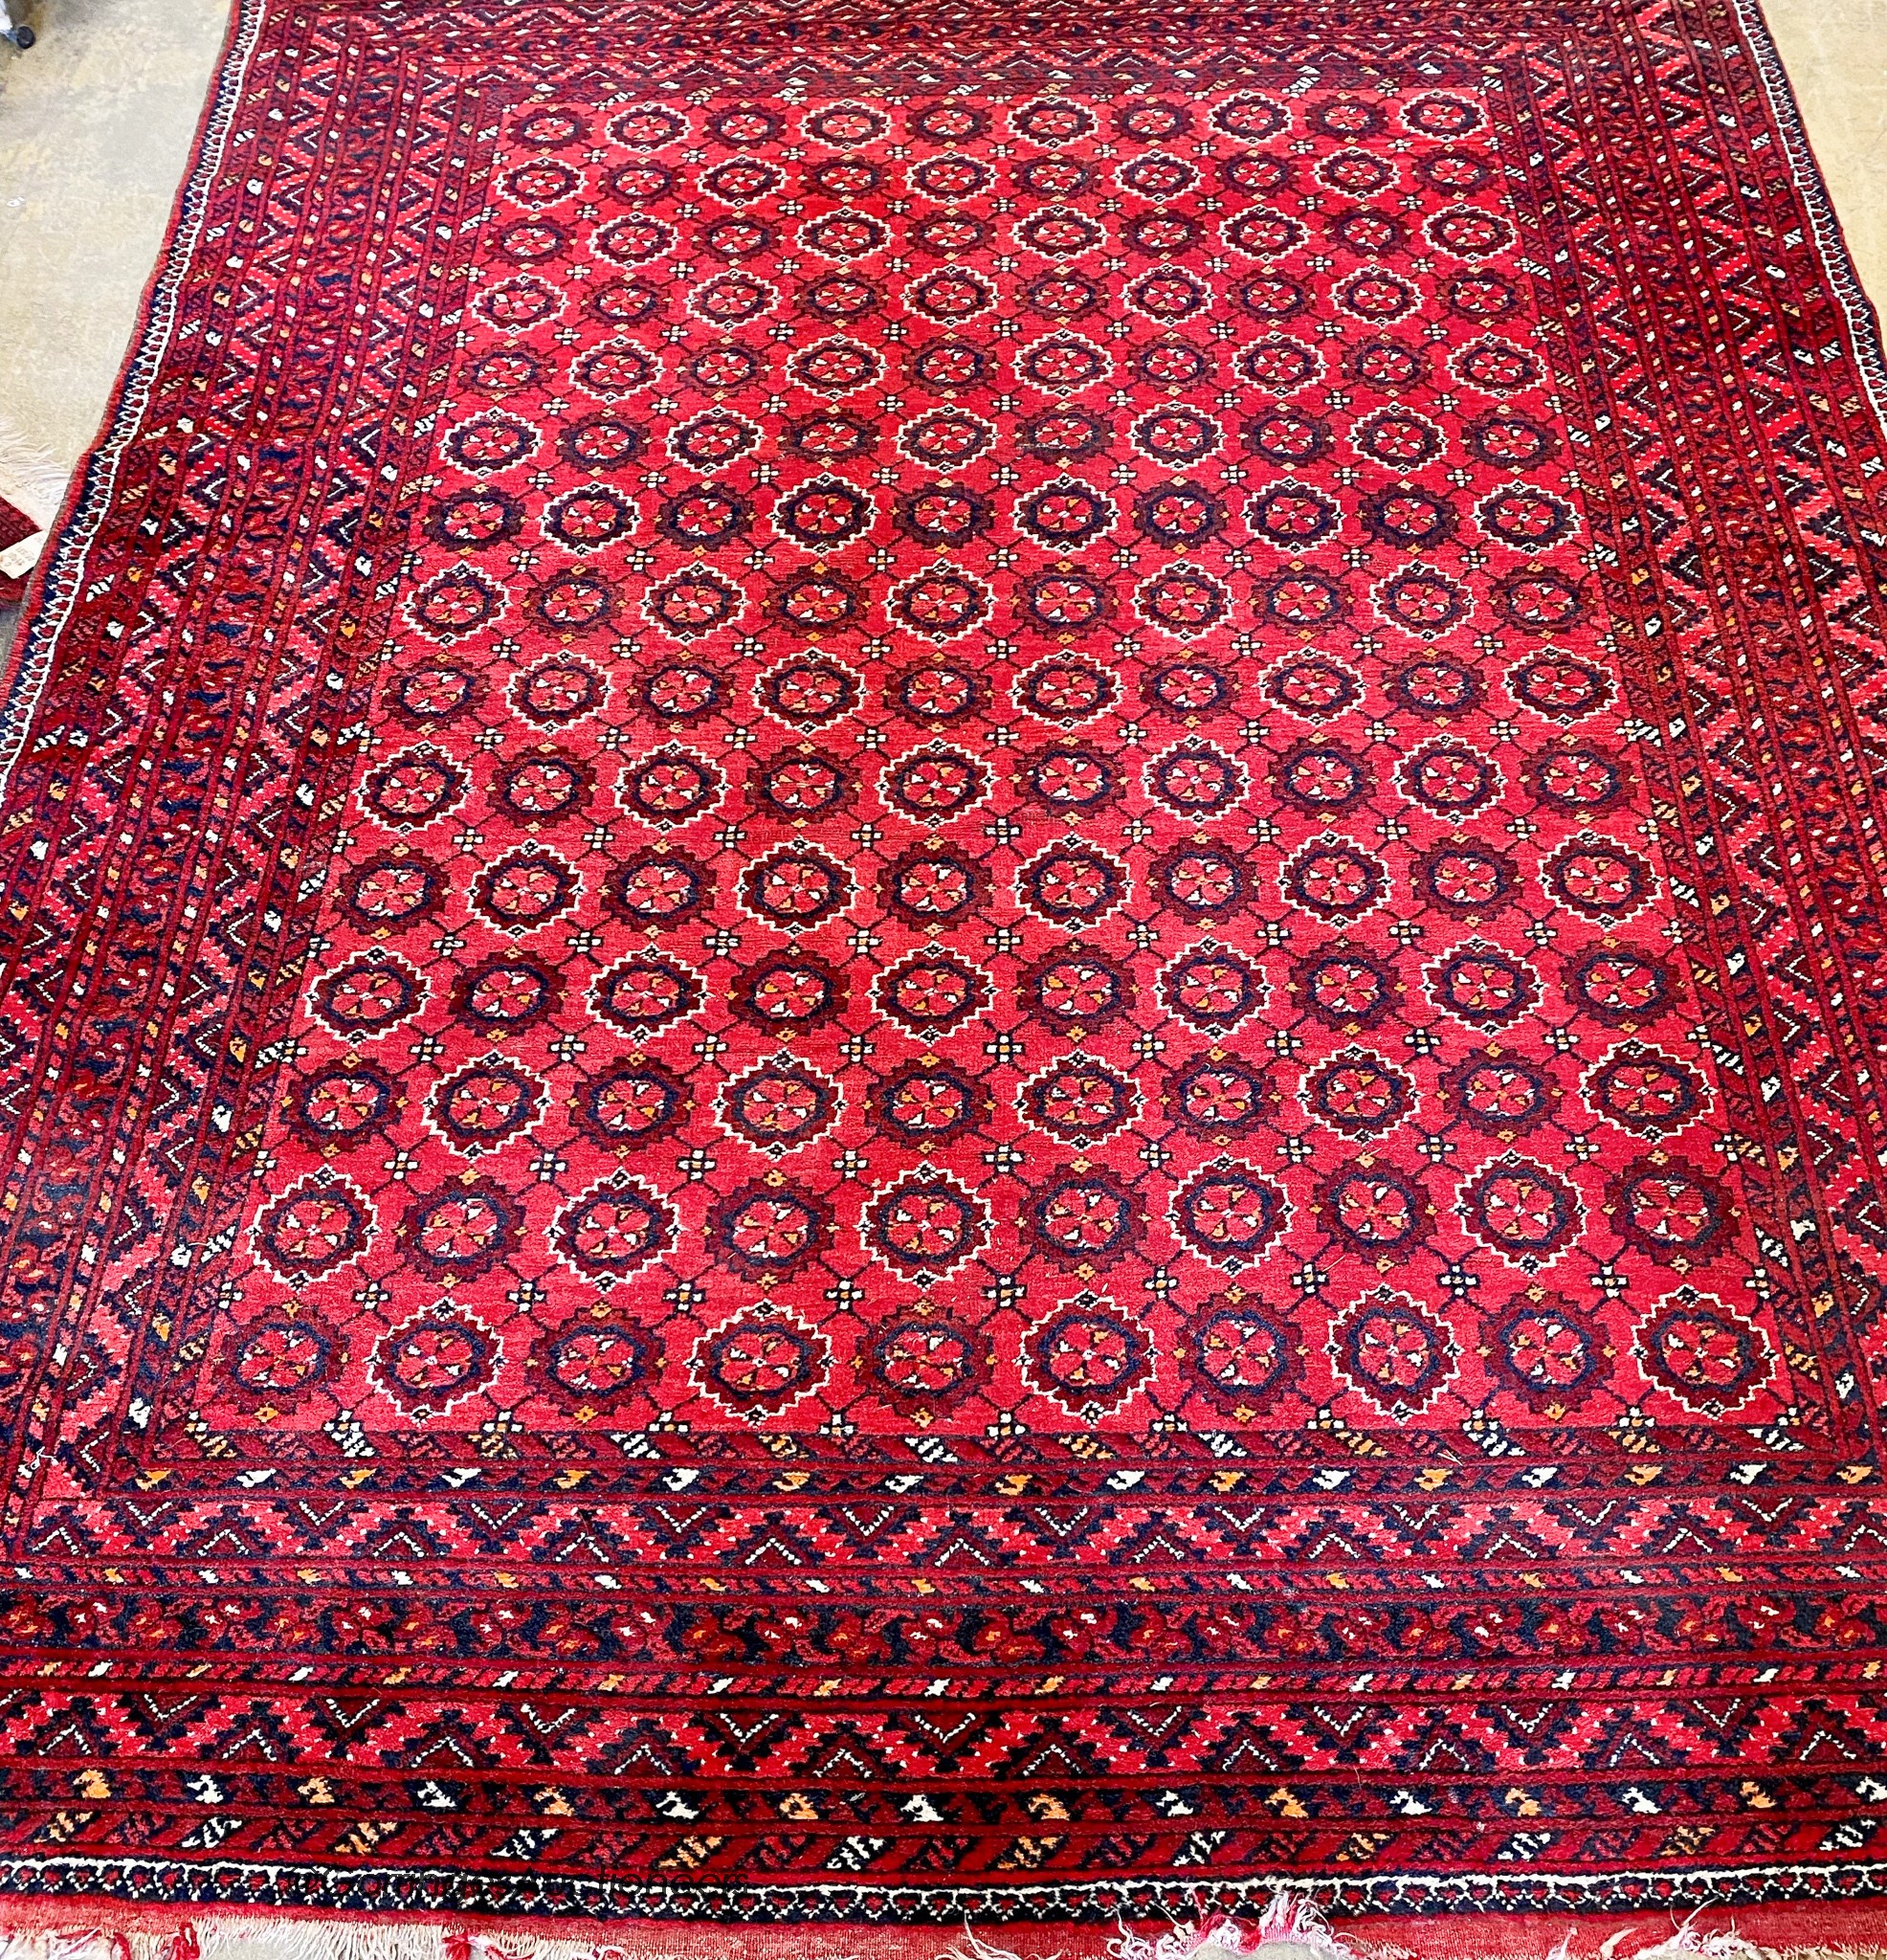 A Turkish red ground carpet. 296x240cm.